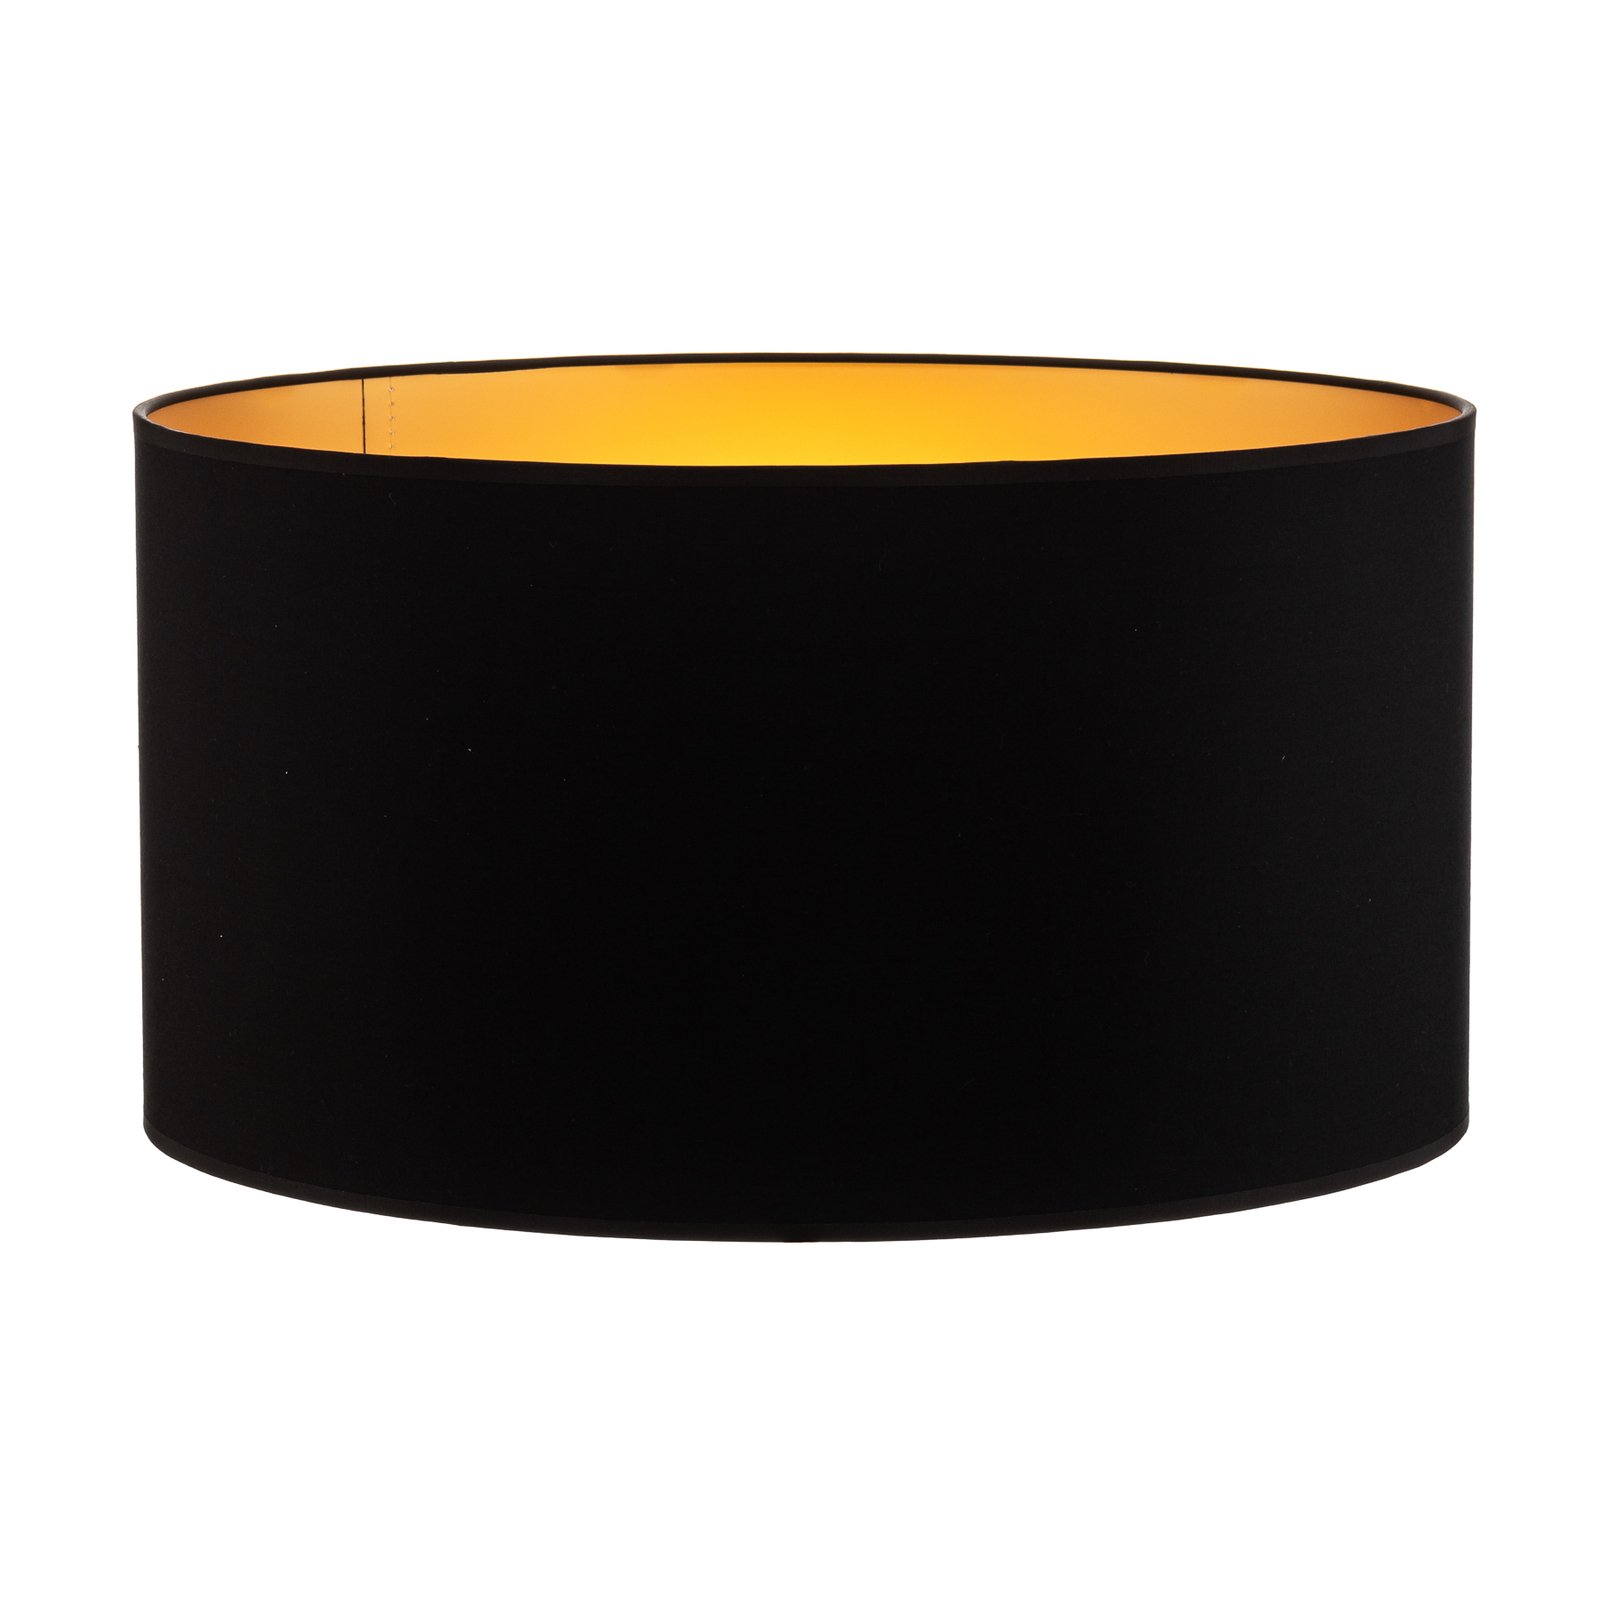 Alba lampshade, Ø 45 cm, E27, black/gold